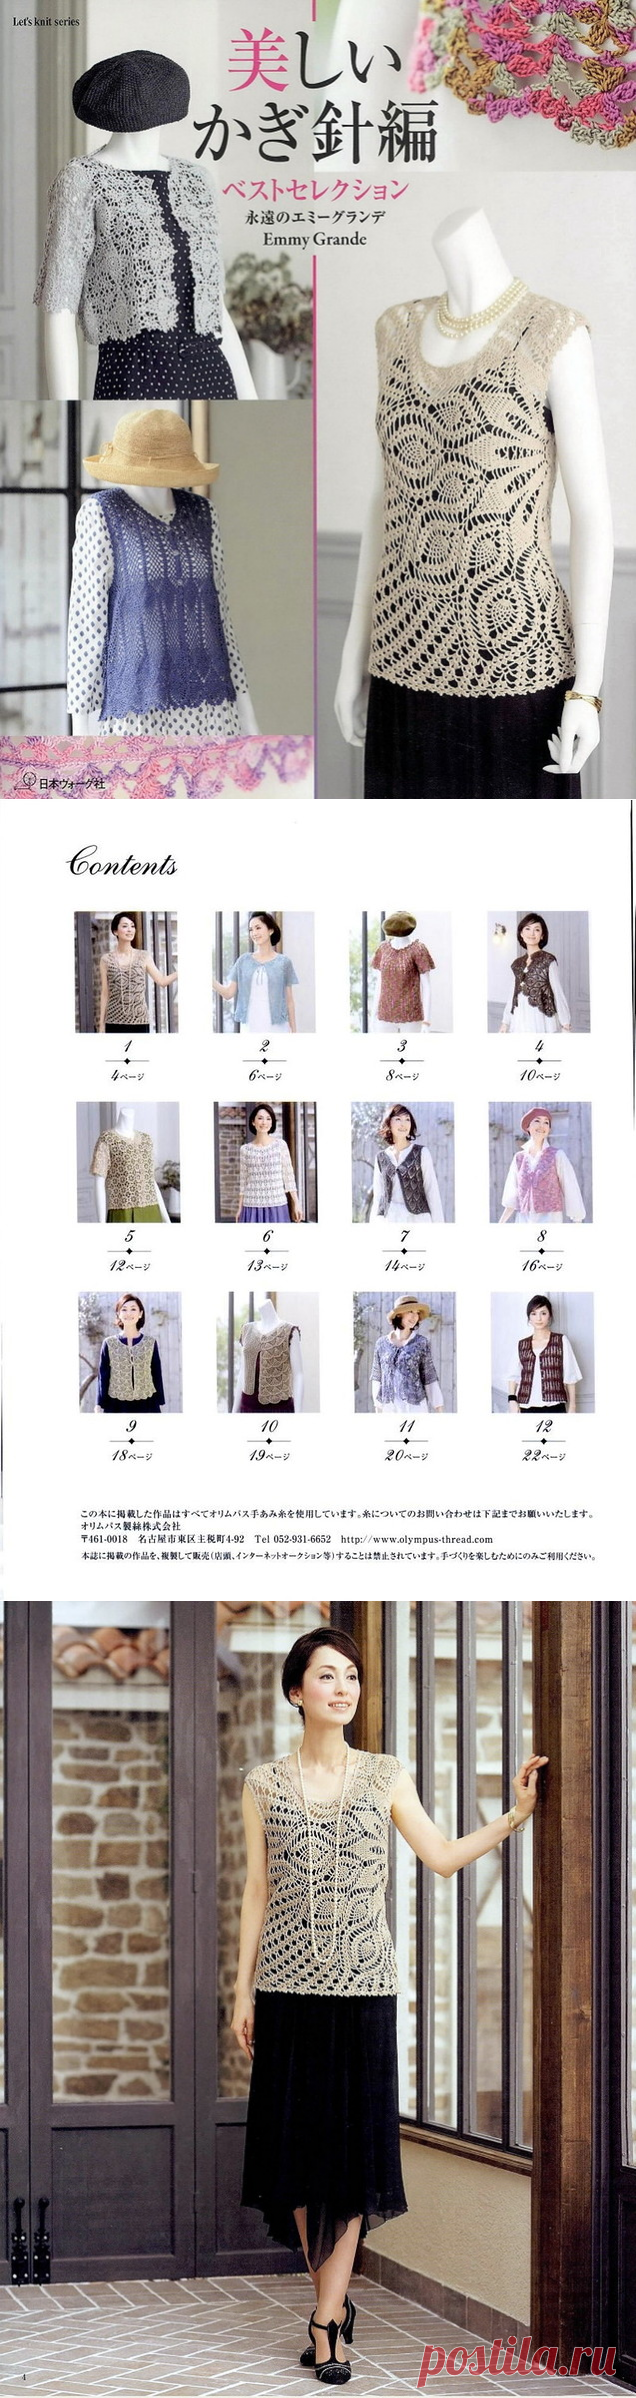 Beautiful crochet knitting Best Selection NV80395 2014